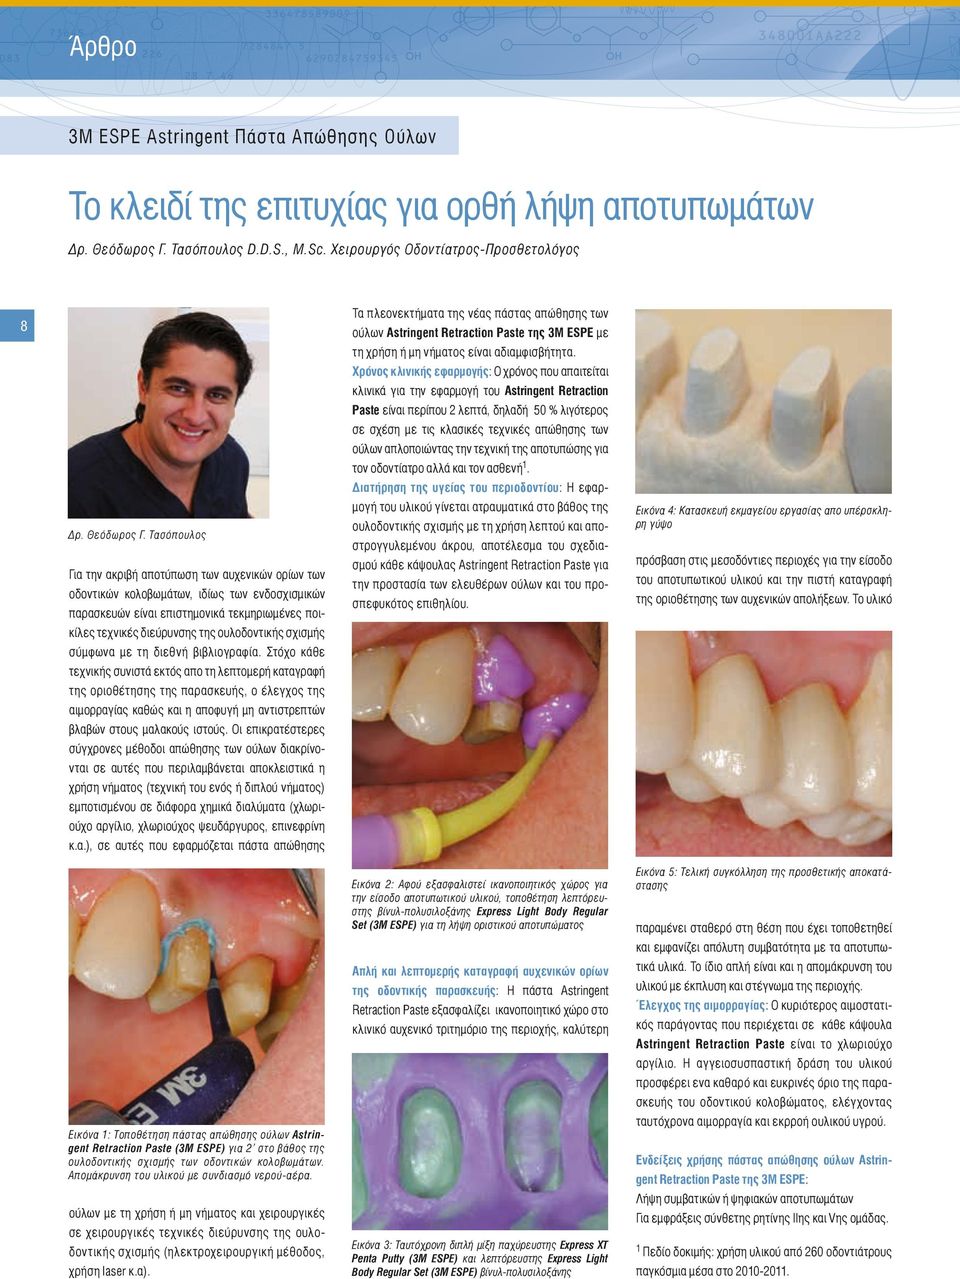 Τασόπουλος Για την ακριβή αποτύπωση των αυχενικών ορίων των οδοντικών κολοβωμάτων, ιδίως των ενδοσχισμικών παρασκευών είναι επιστημονικά τεκμηριωμένες ποικίλες τεχνικές διεύρυνσης της ουλοδοντικής